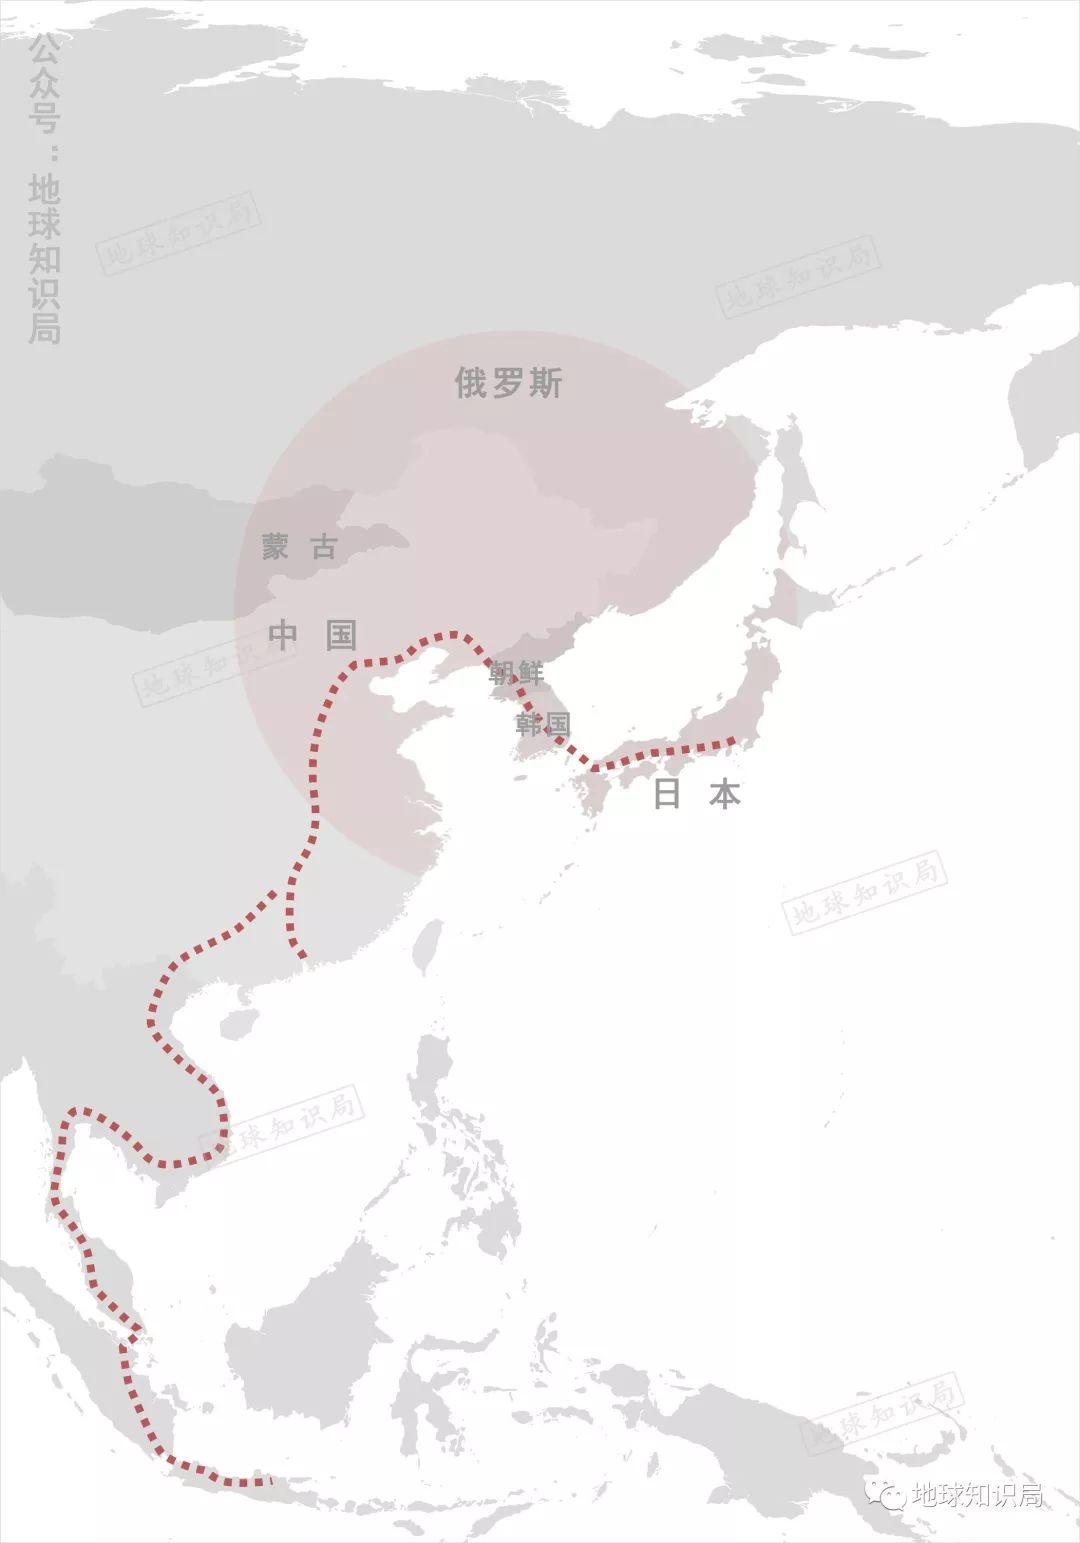 什么是“东北亚铁路共同体”？